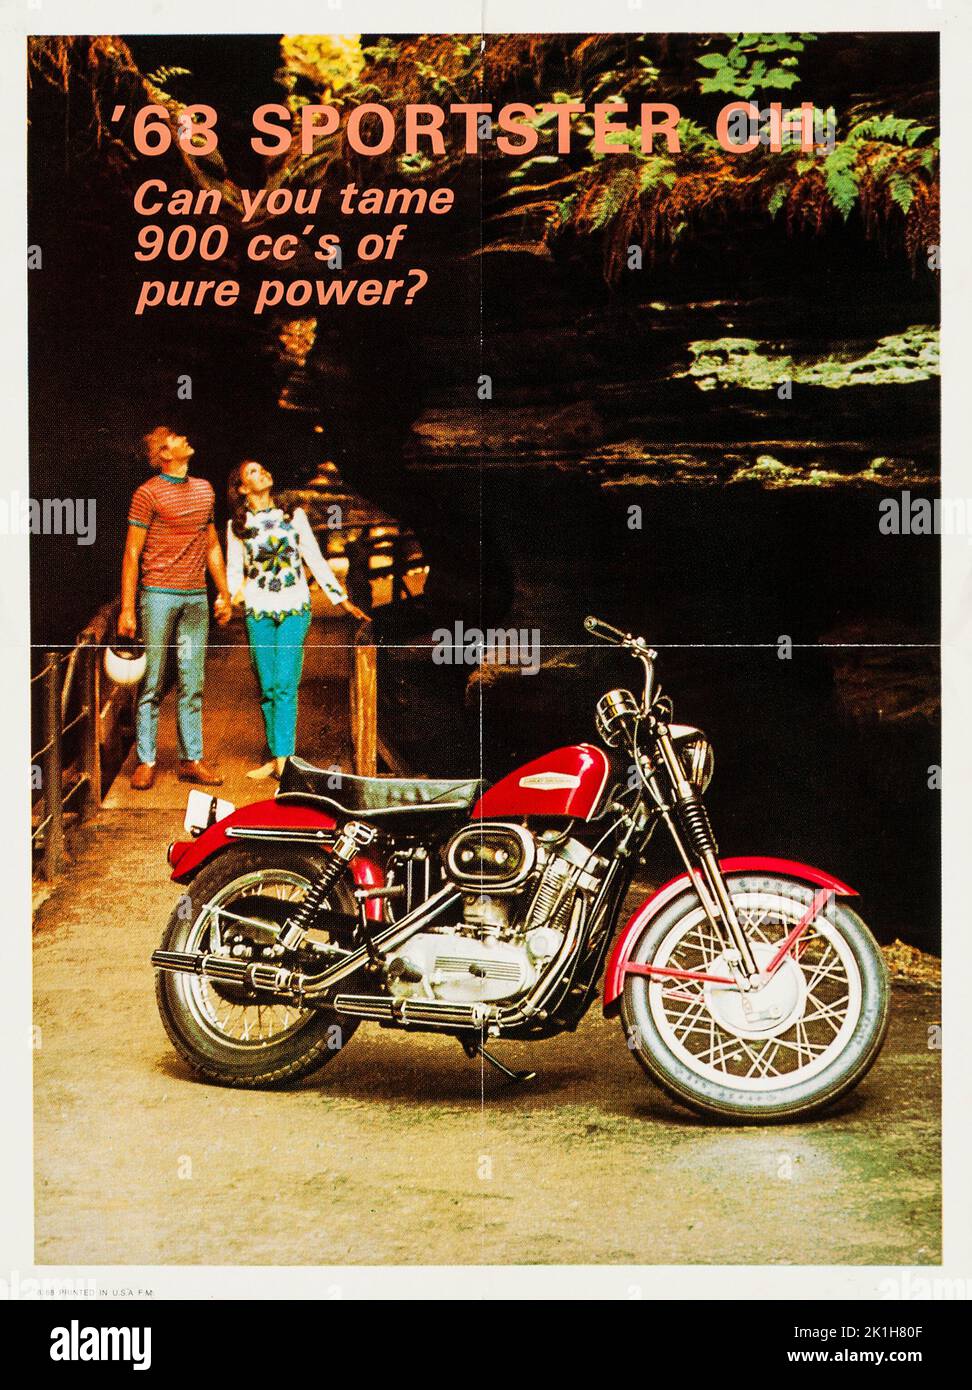 Sportster 1968 (Harley Davidson, 1968). Affiche publicitaire - 900 cc Banque D'Images